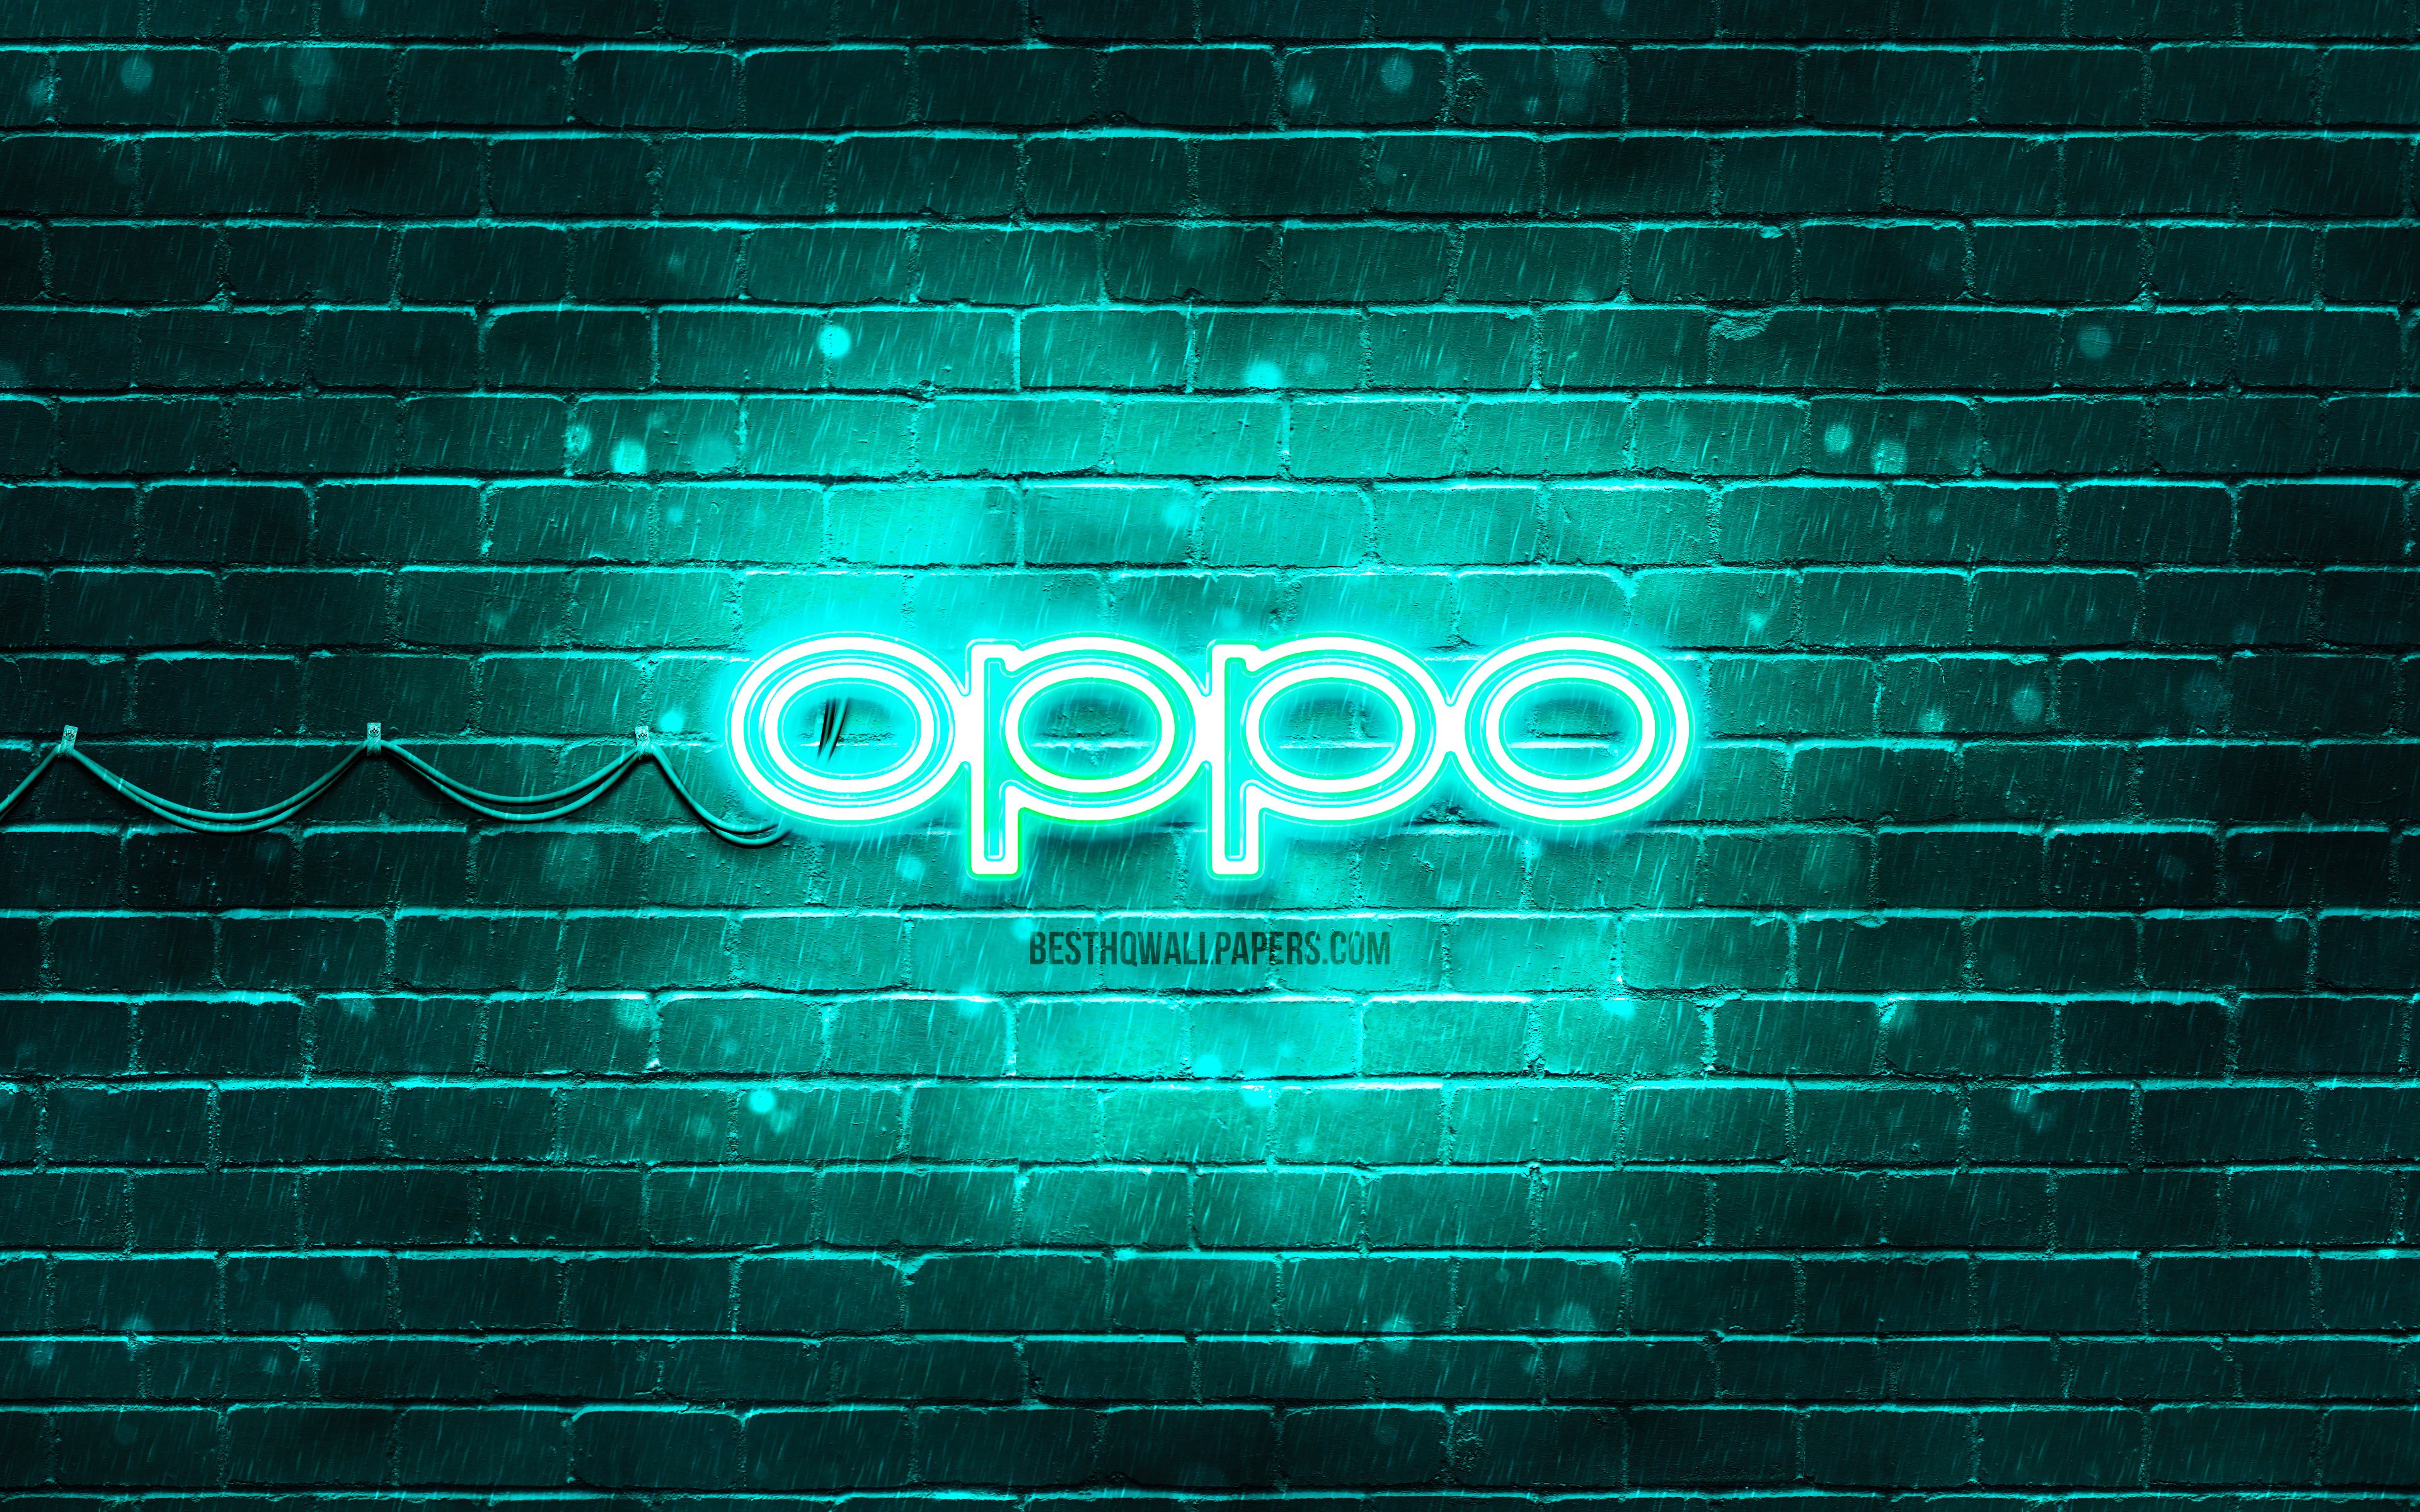 Oppo turquoise logo, 4k, turquoise brickwall, Oppo logo, brands, Oppo neon logo, Oppo